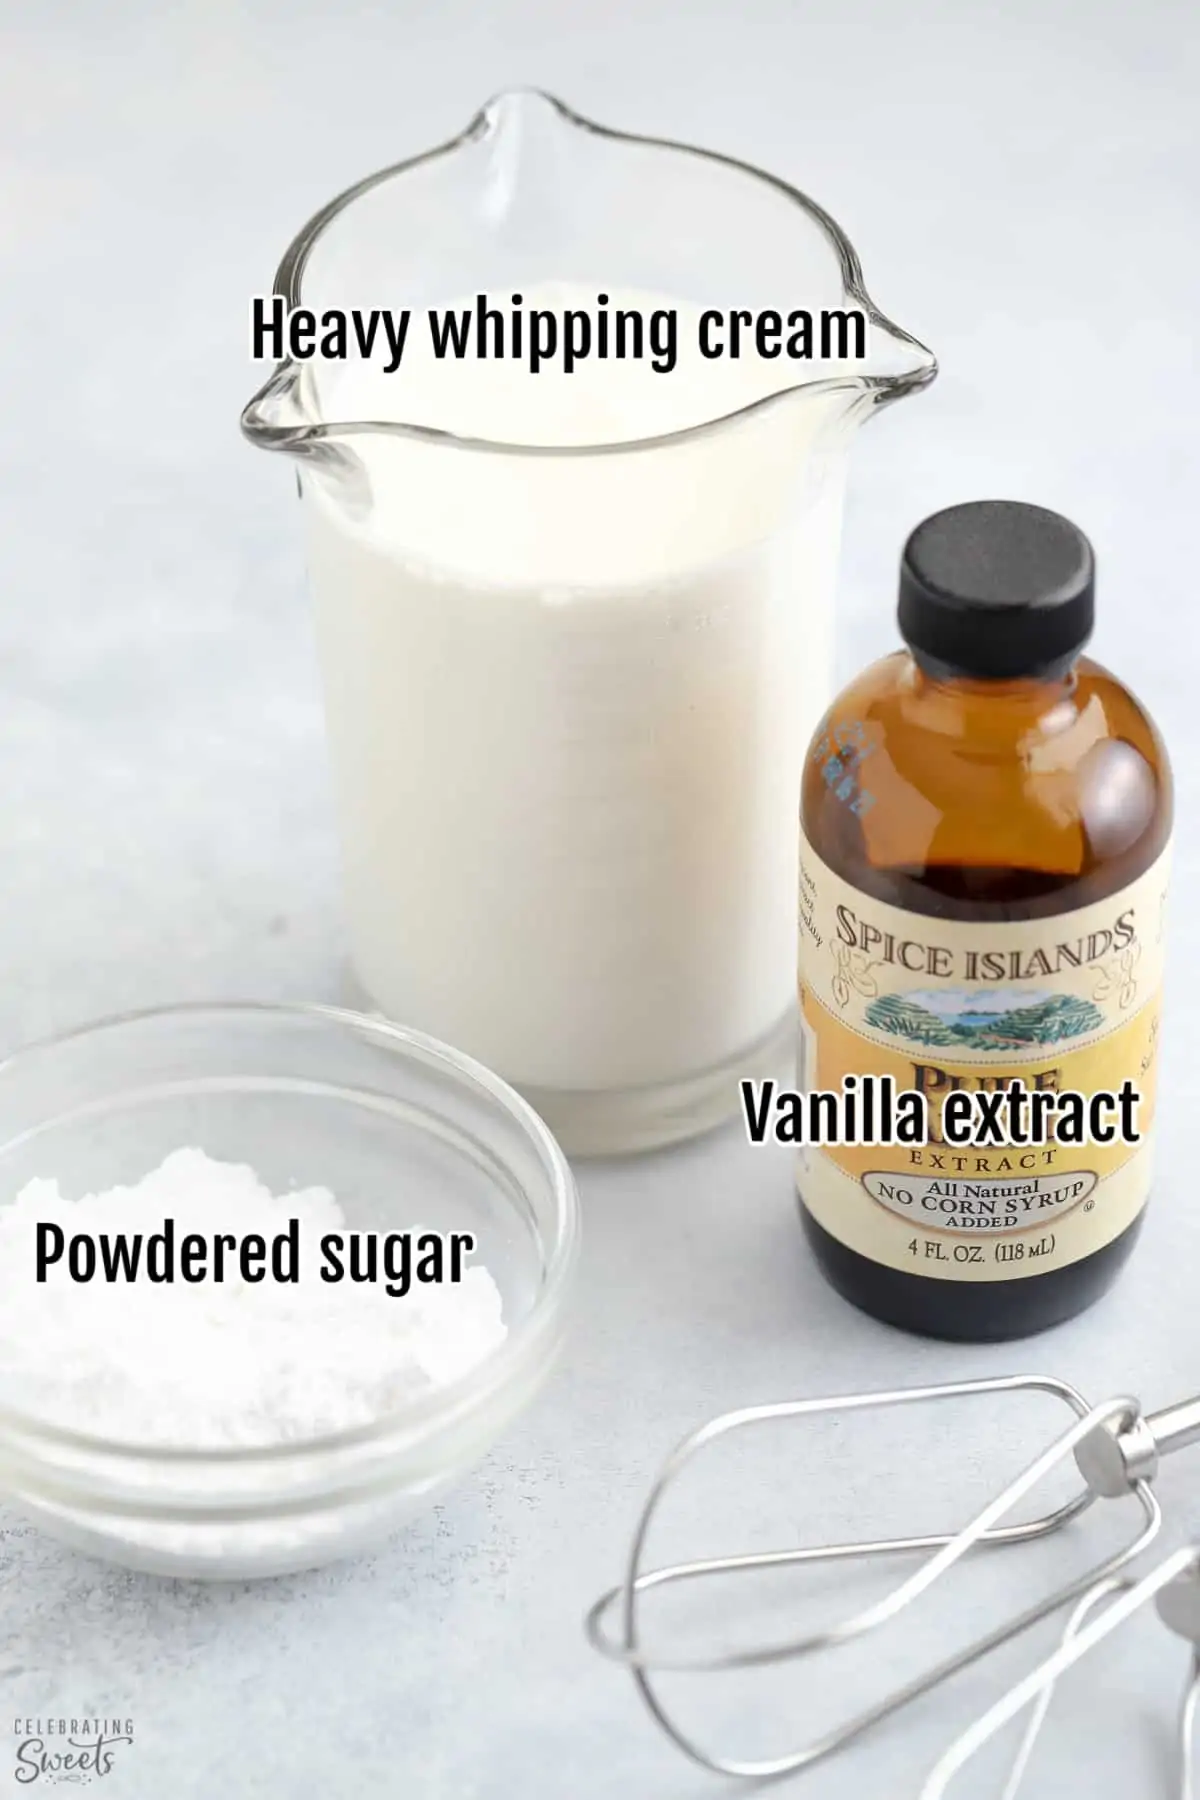 Ingredients to make homemade whipped cream: cream powdered sugar, vanilla.